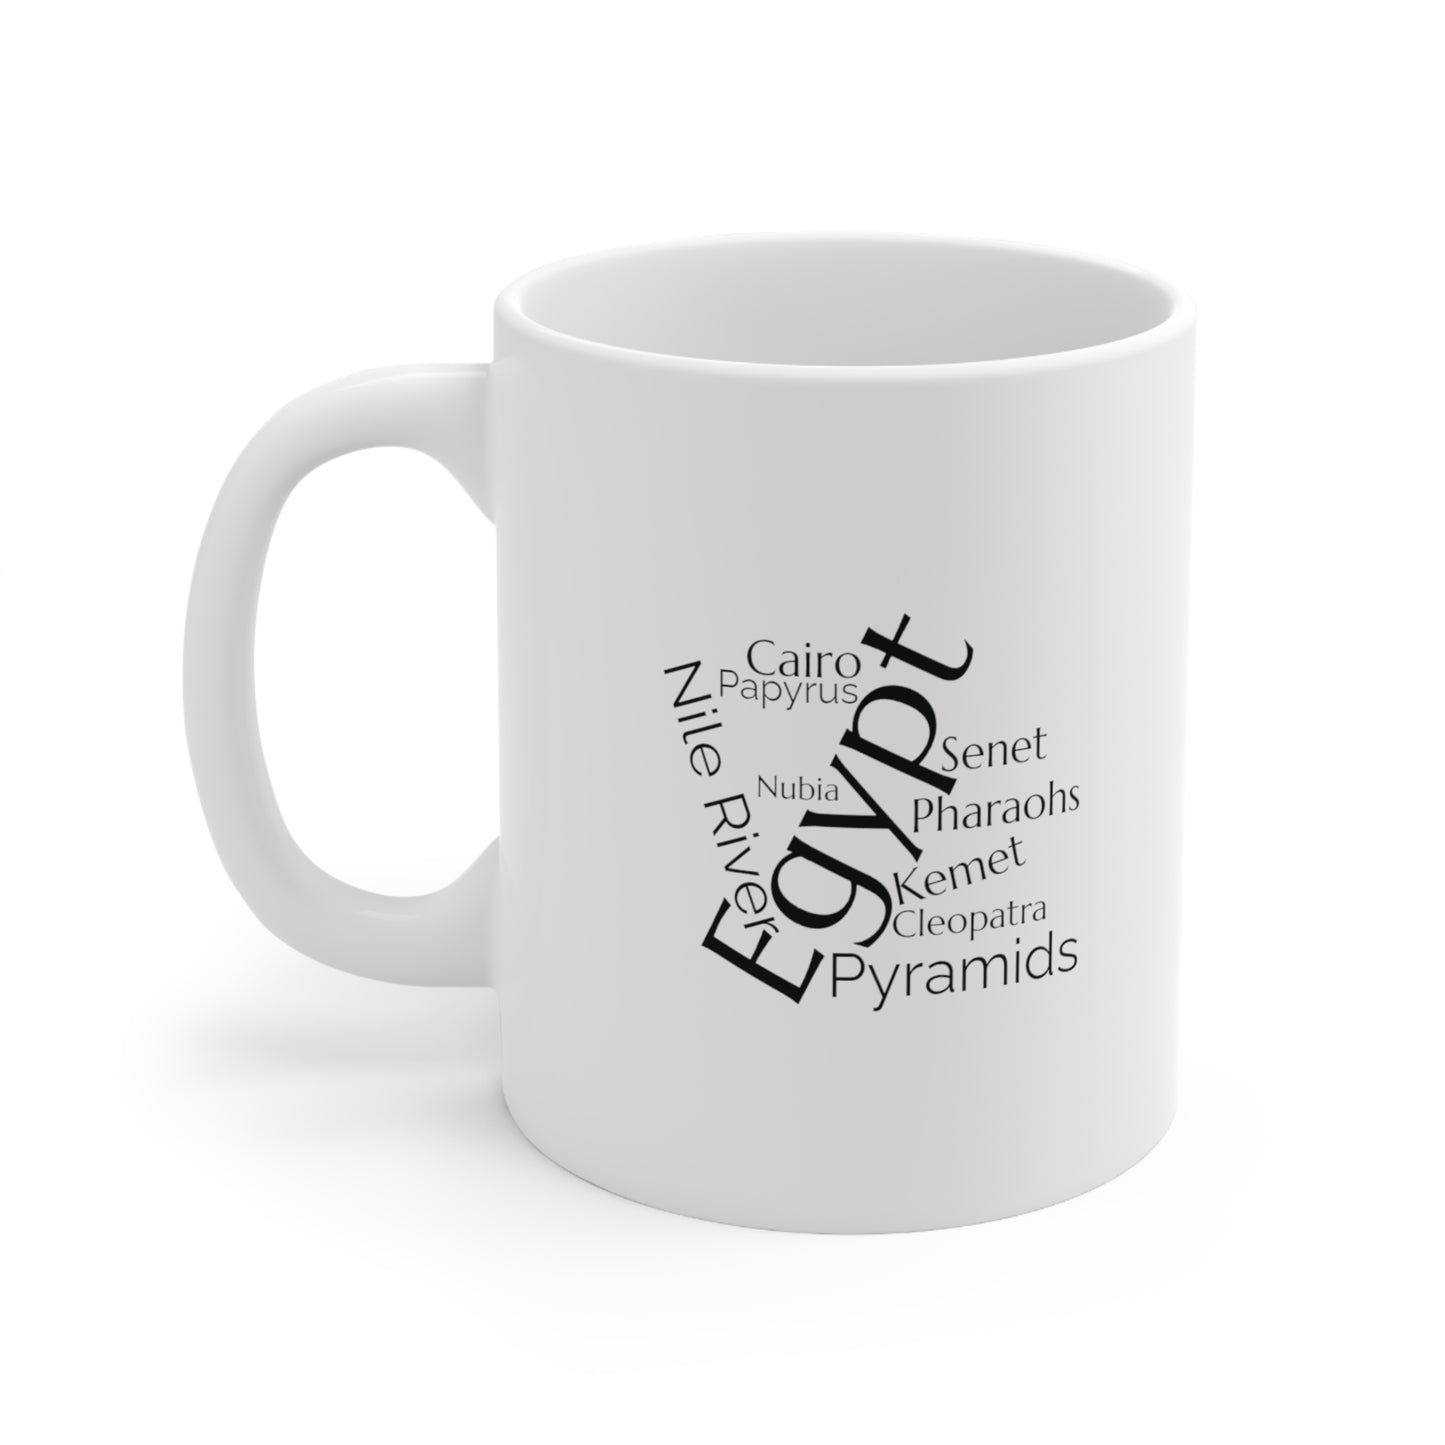 Egypt word mug, local mug, geography mug, gift, mug, coffee cup, word mug, wordcloud mug, christmas gift, birthday gift